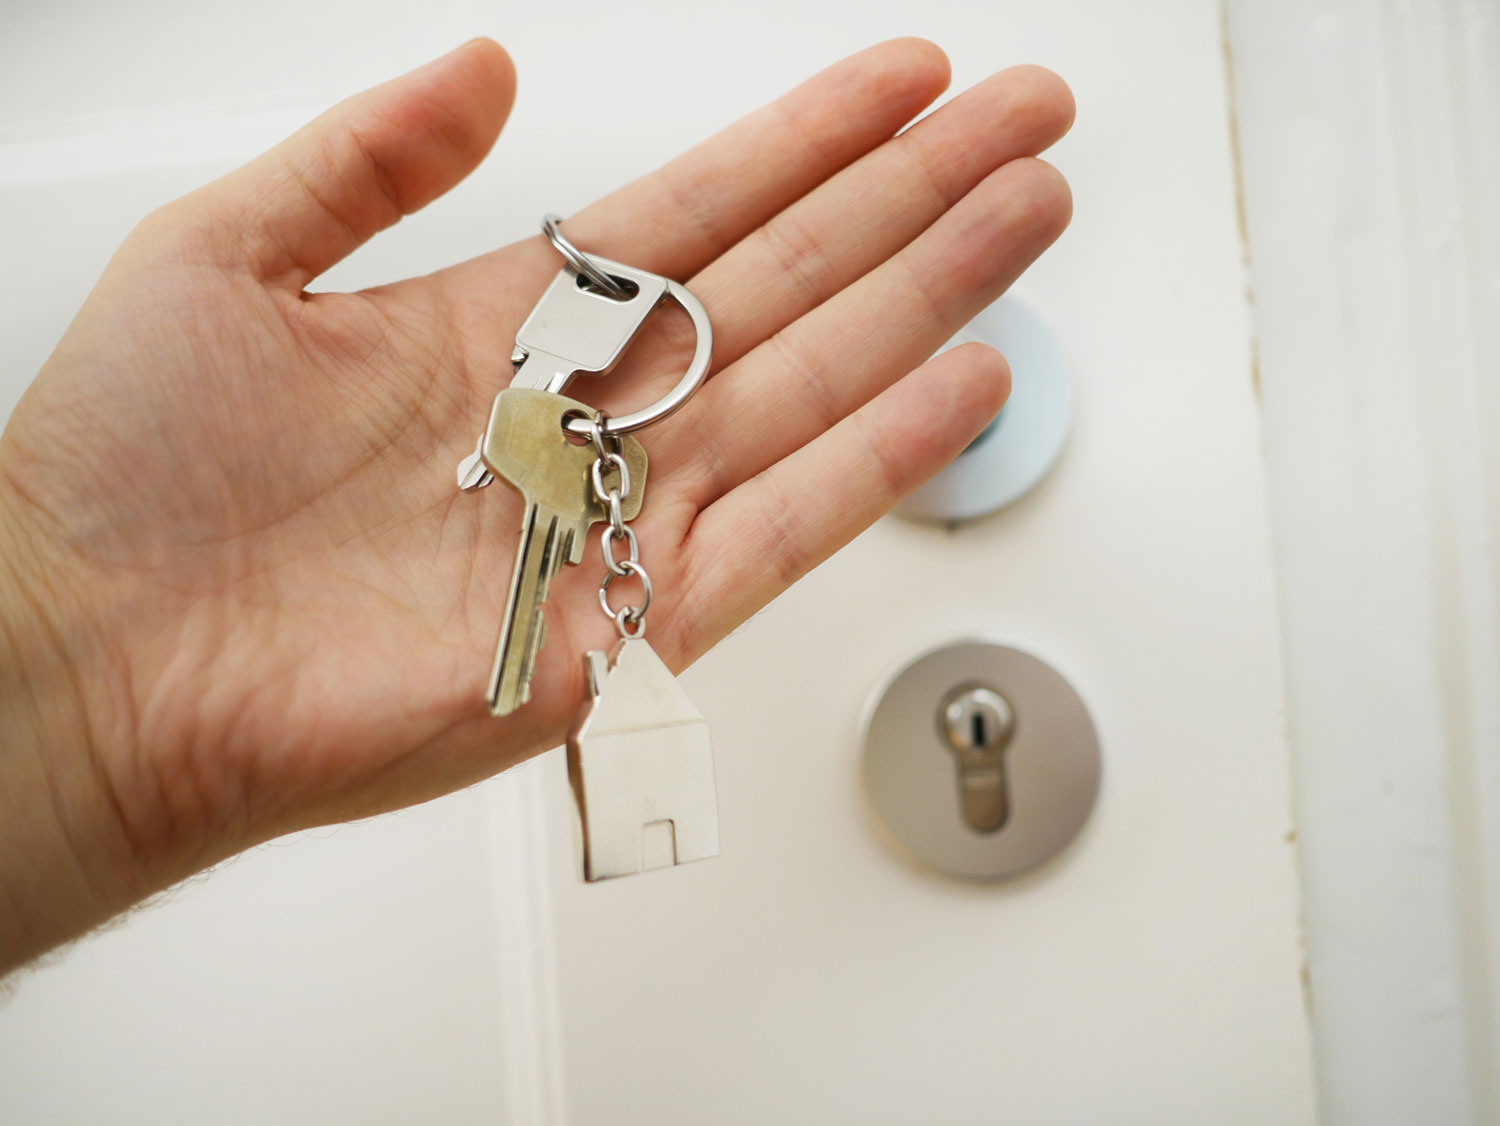 chaves na mão relativas ao imobiliário